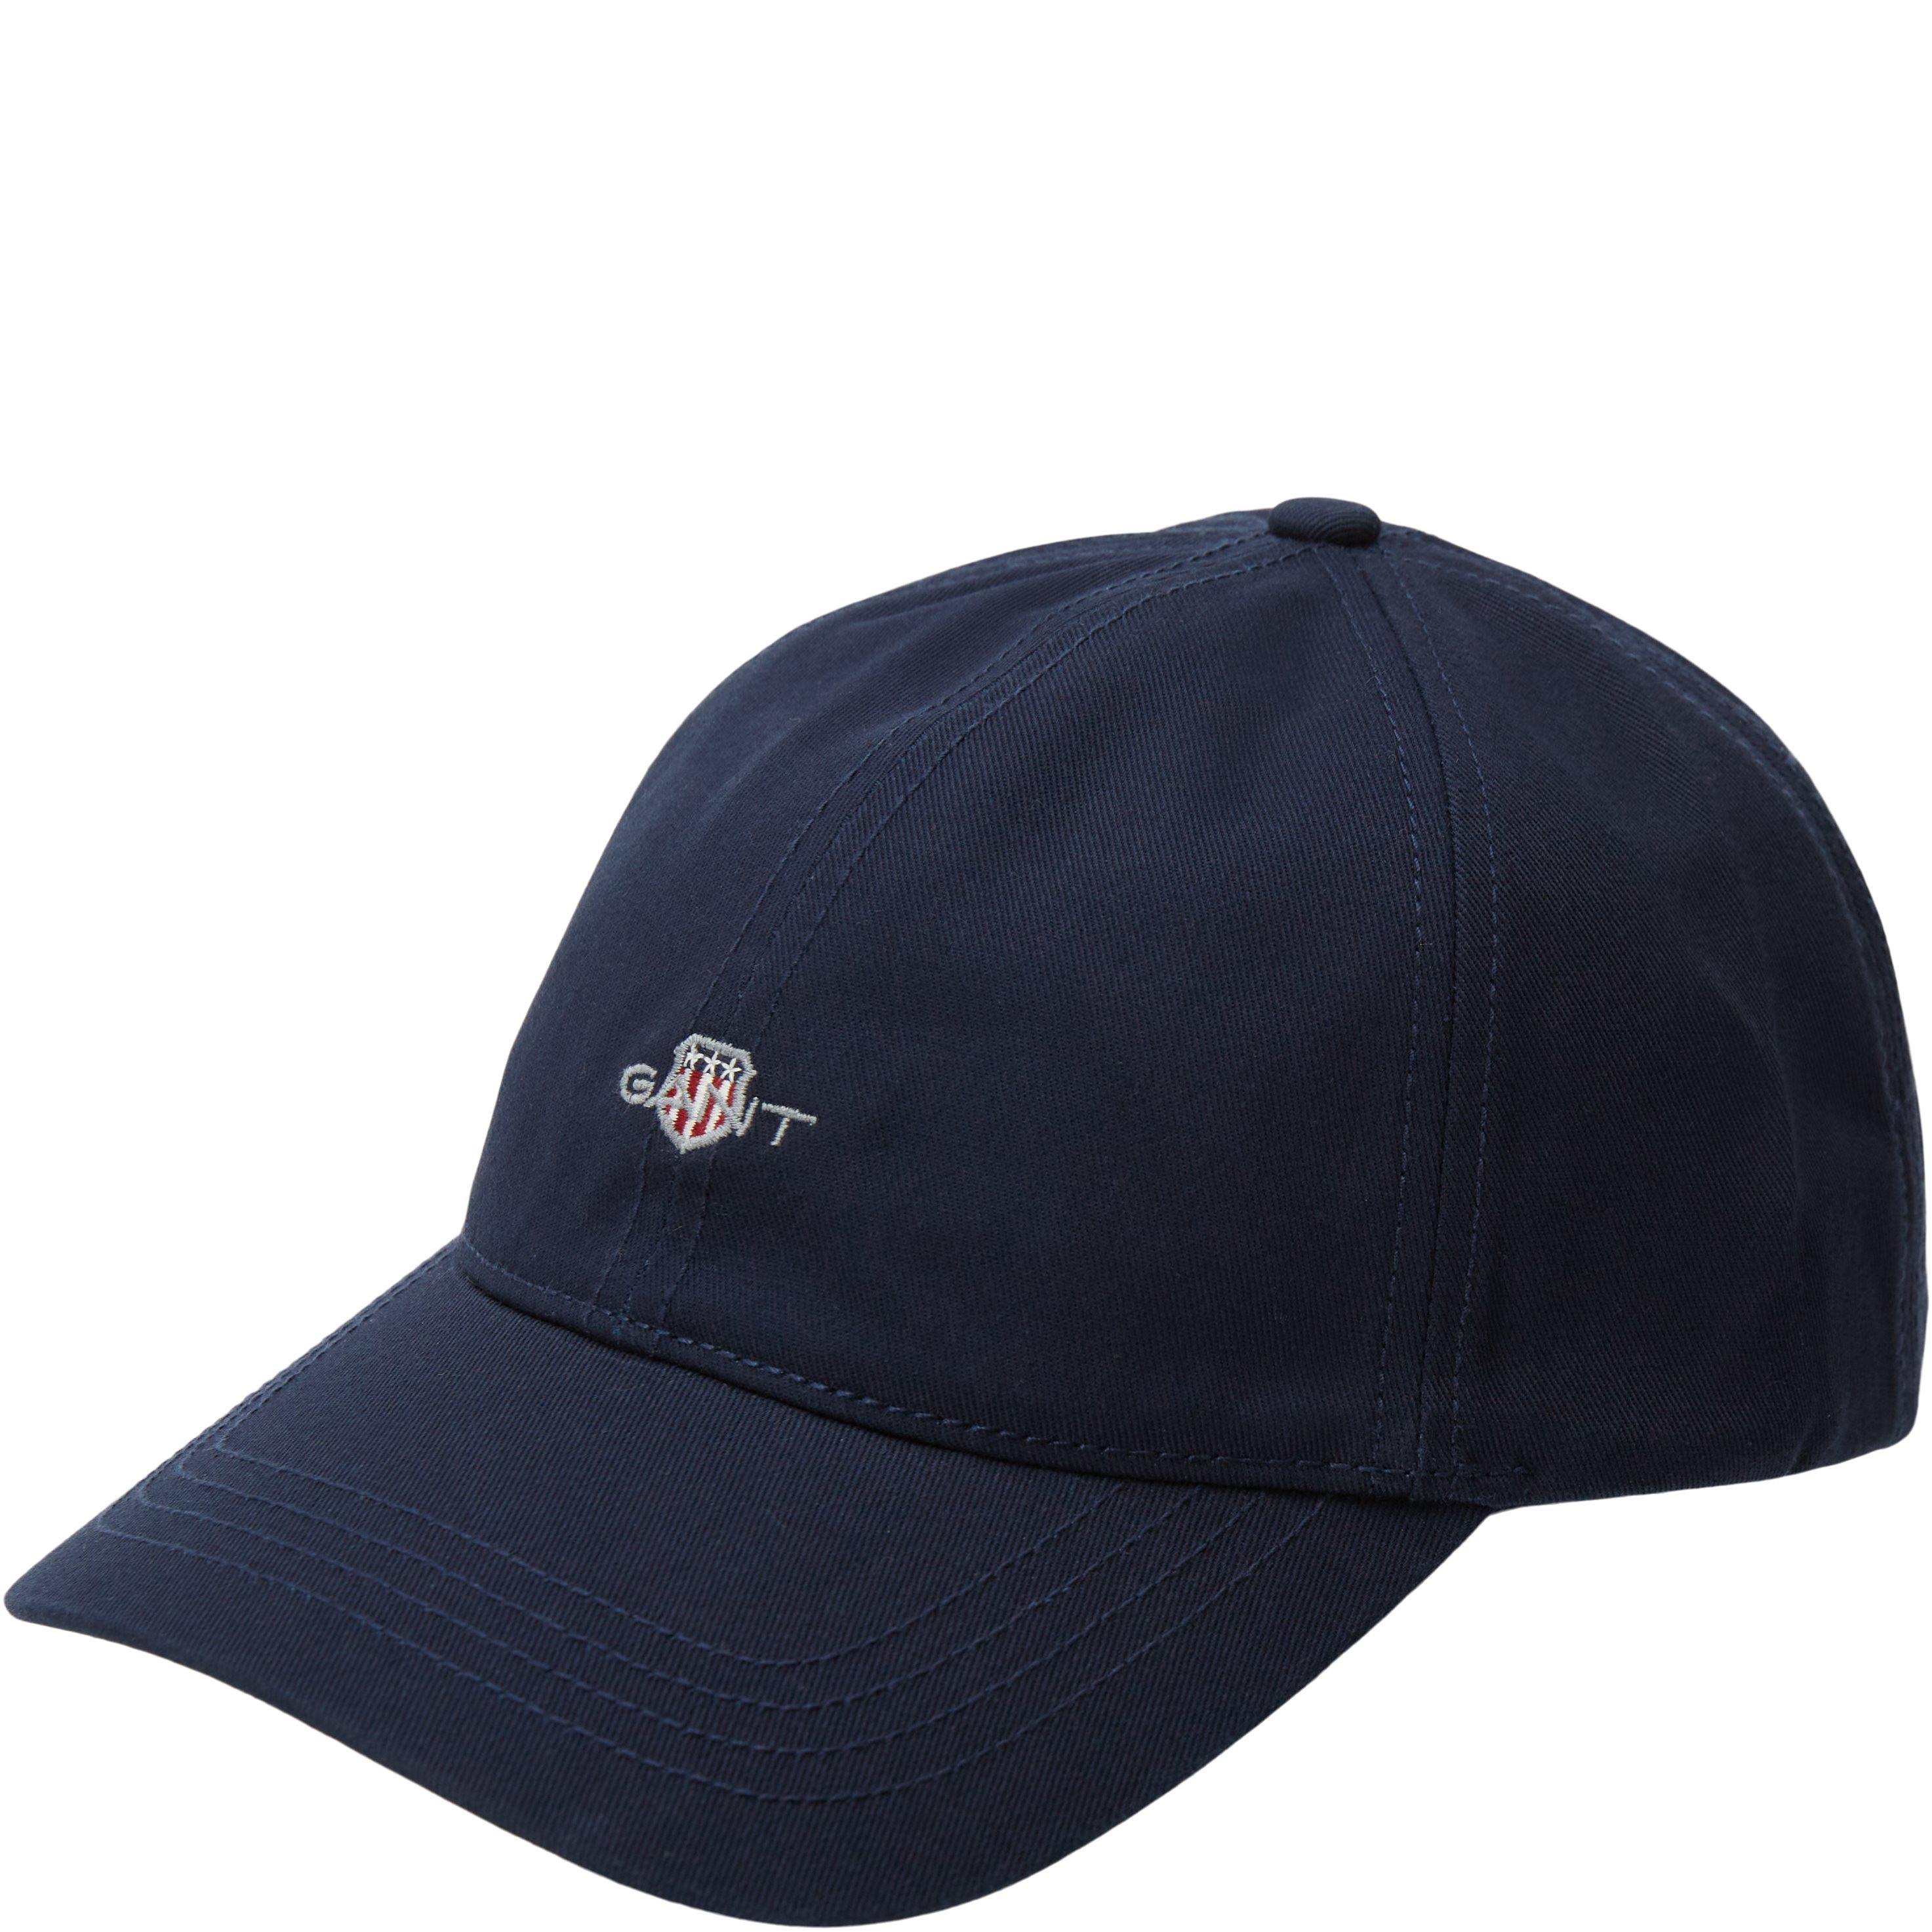 UNISEX SHIELD CAP Caps Gant MARINE 9900111 from EUR 47